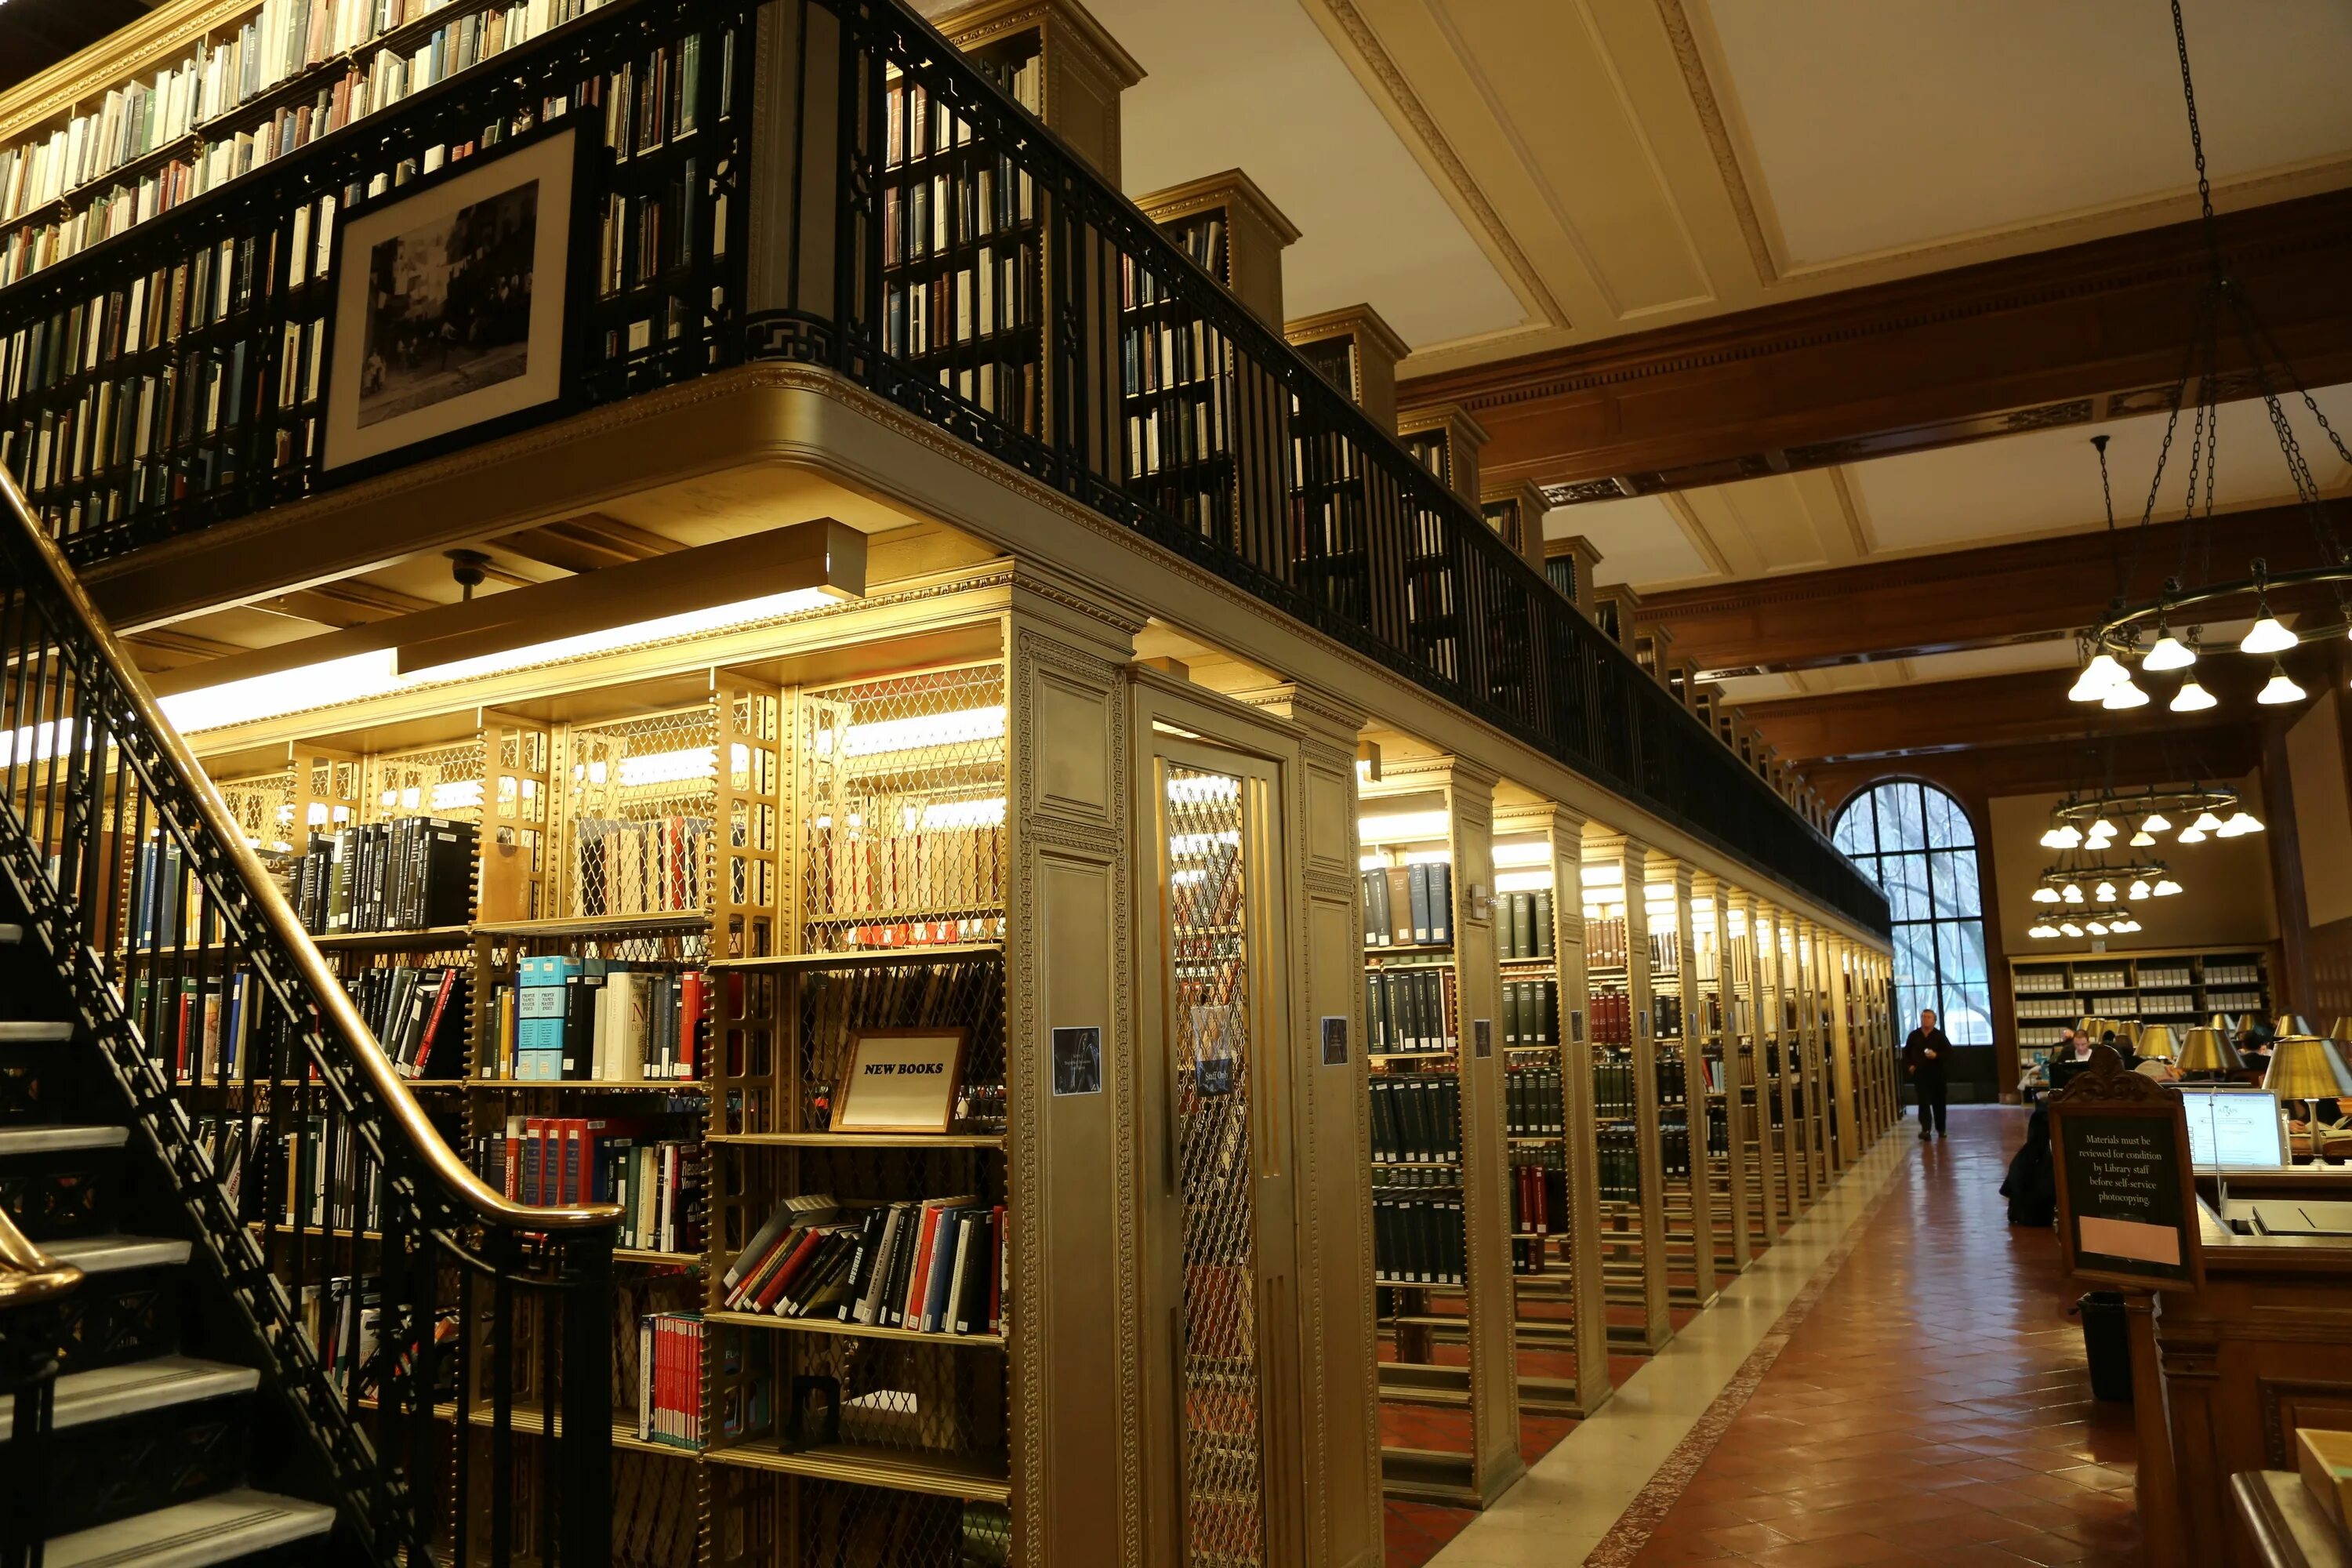 Ld library. Библиотека в Нью-Йорке. Нью Йорк паблик библиотека. Библиотека Нью-Йорка Центральная. Нью Йоркская Национальная библиотека.